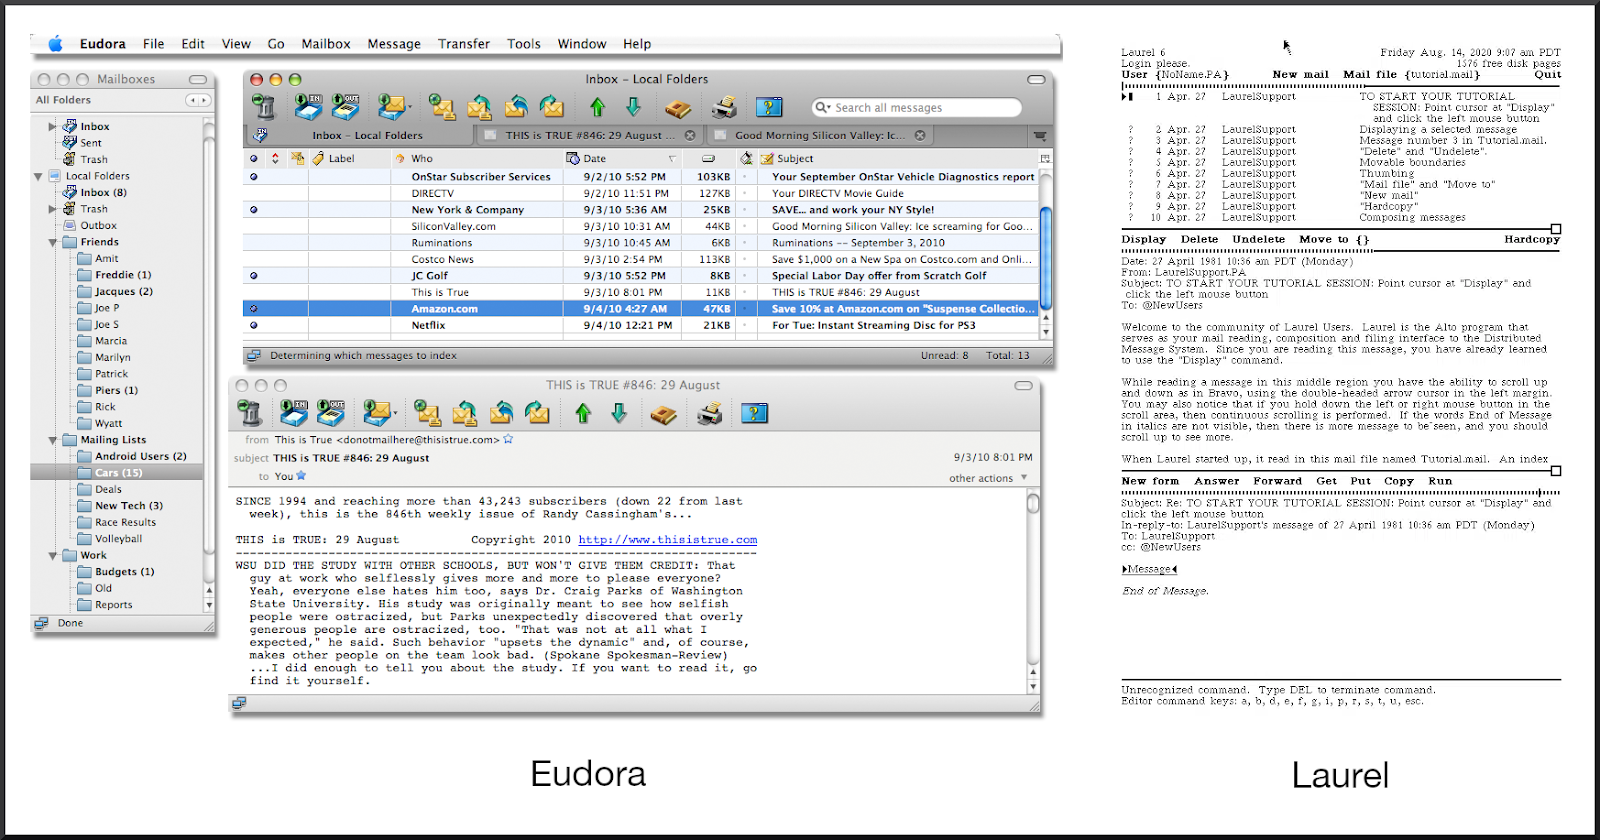 Screenshots of Eudora and Laurel email clients